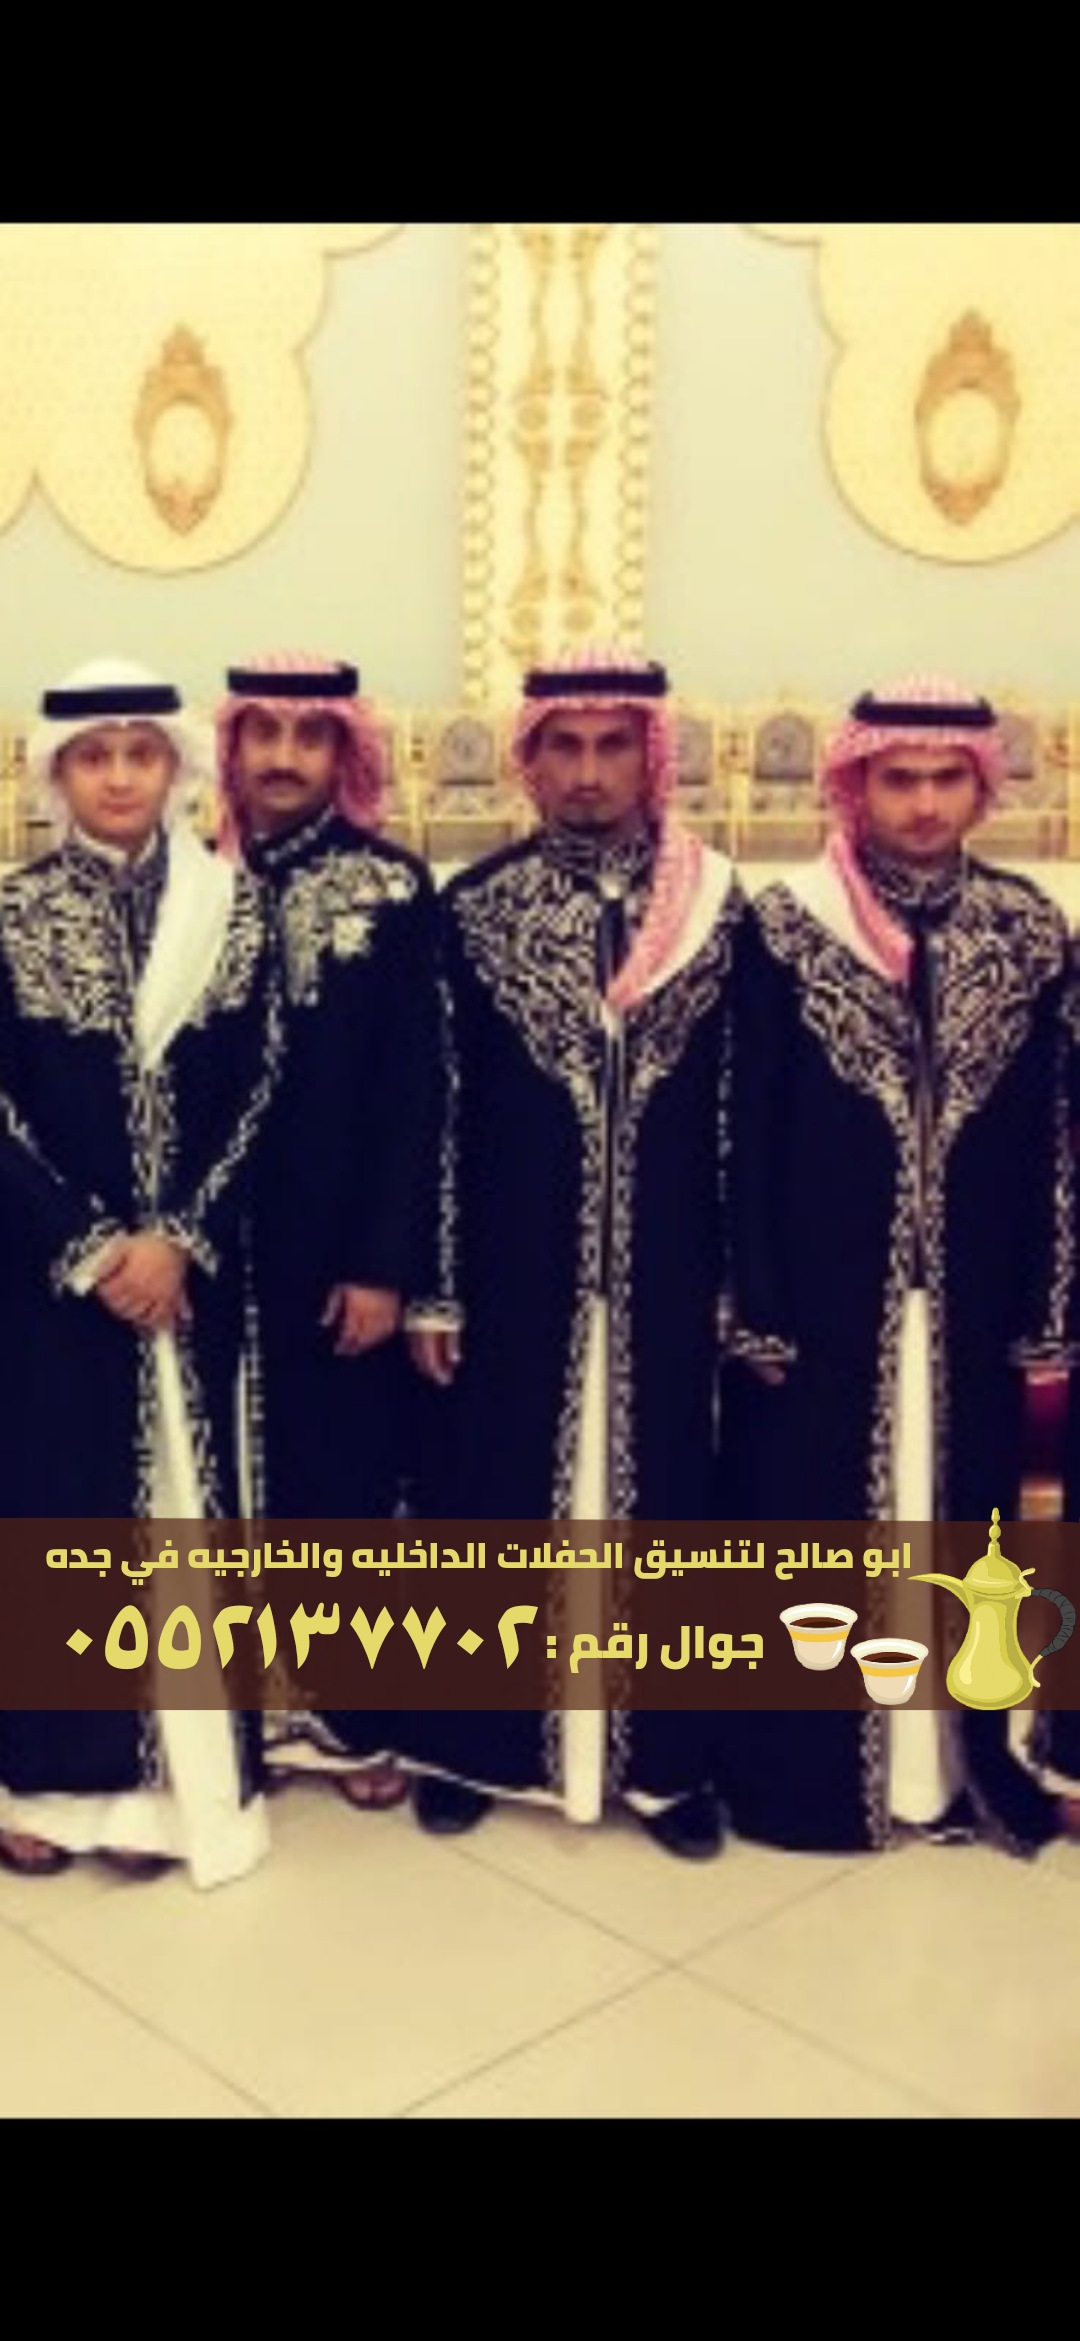 صبابين قهوة في جدة و صبابات قهوه , 0552137702 P_2371tw9cb2